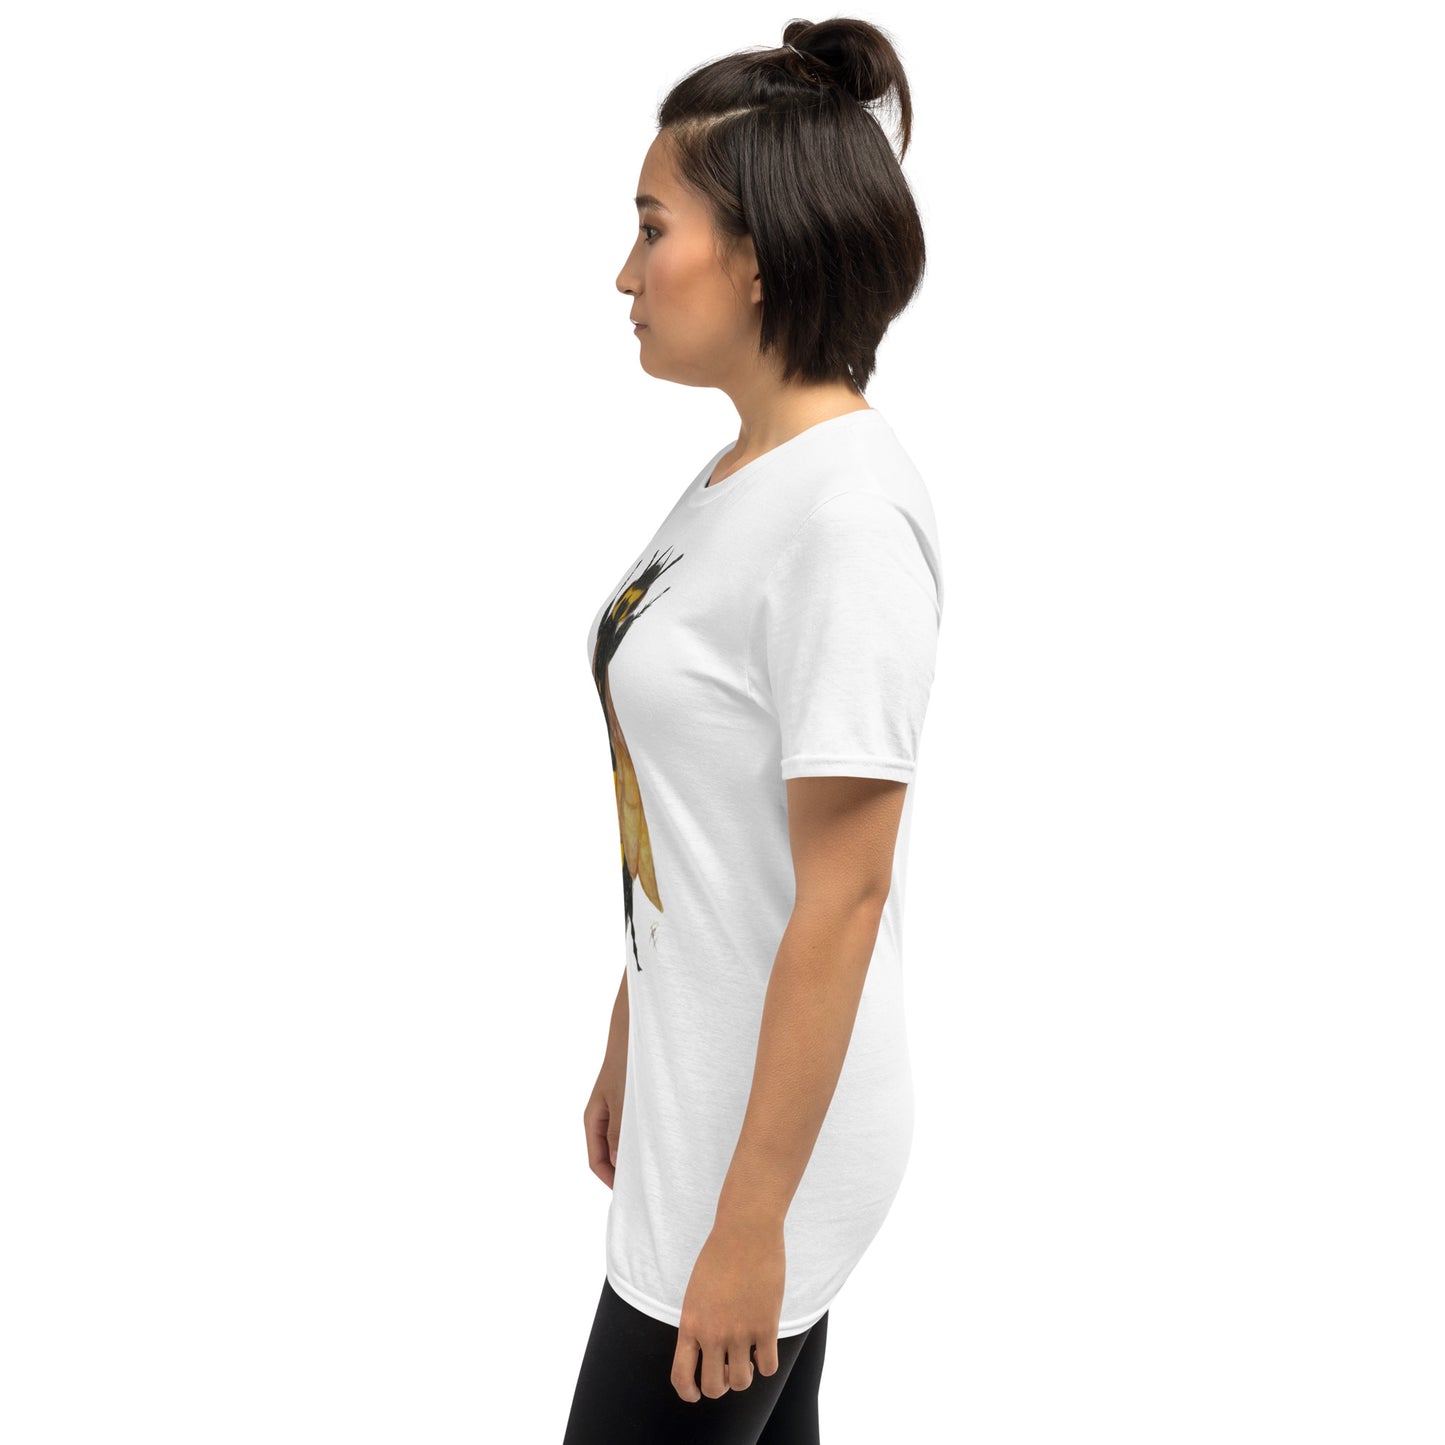 Camiseta unissex com mangas curtas